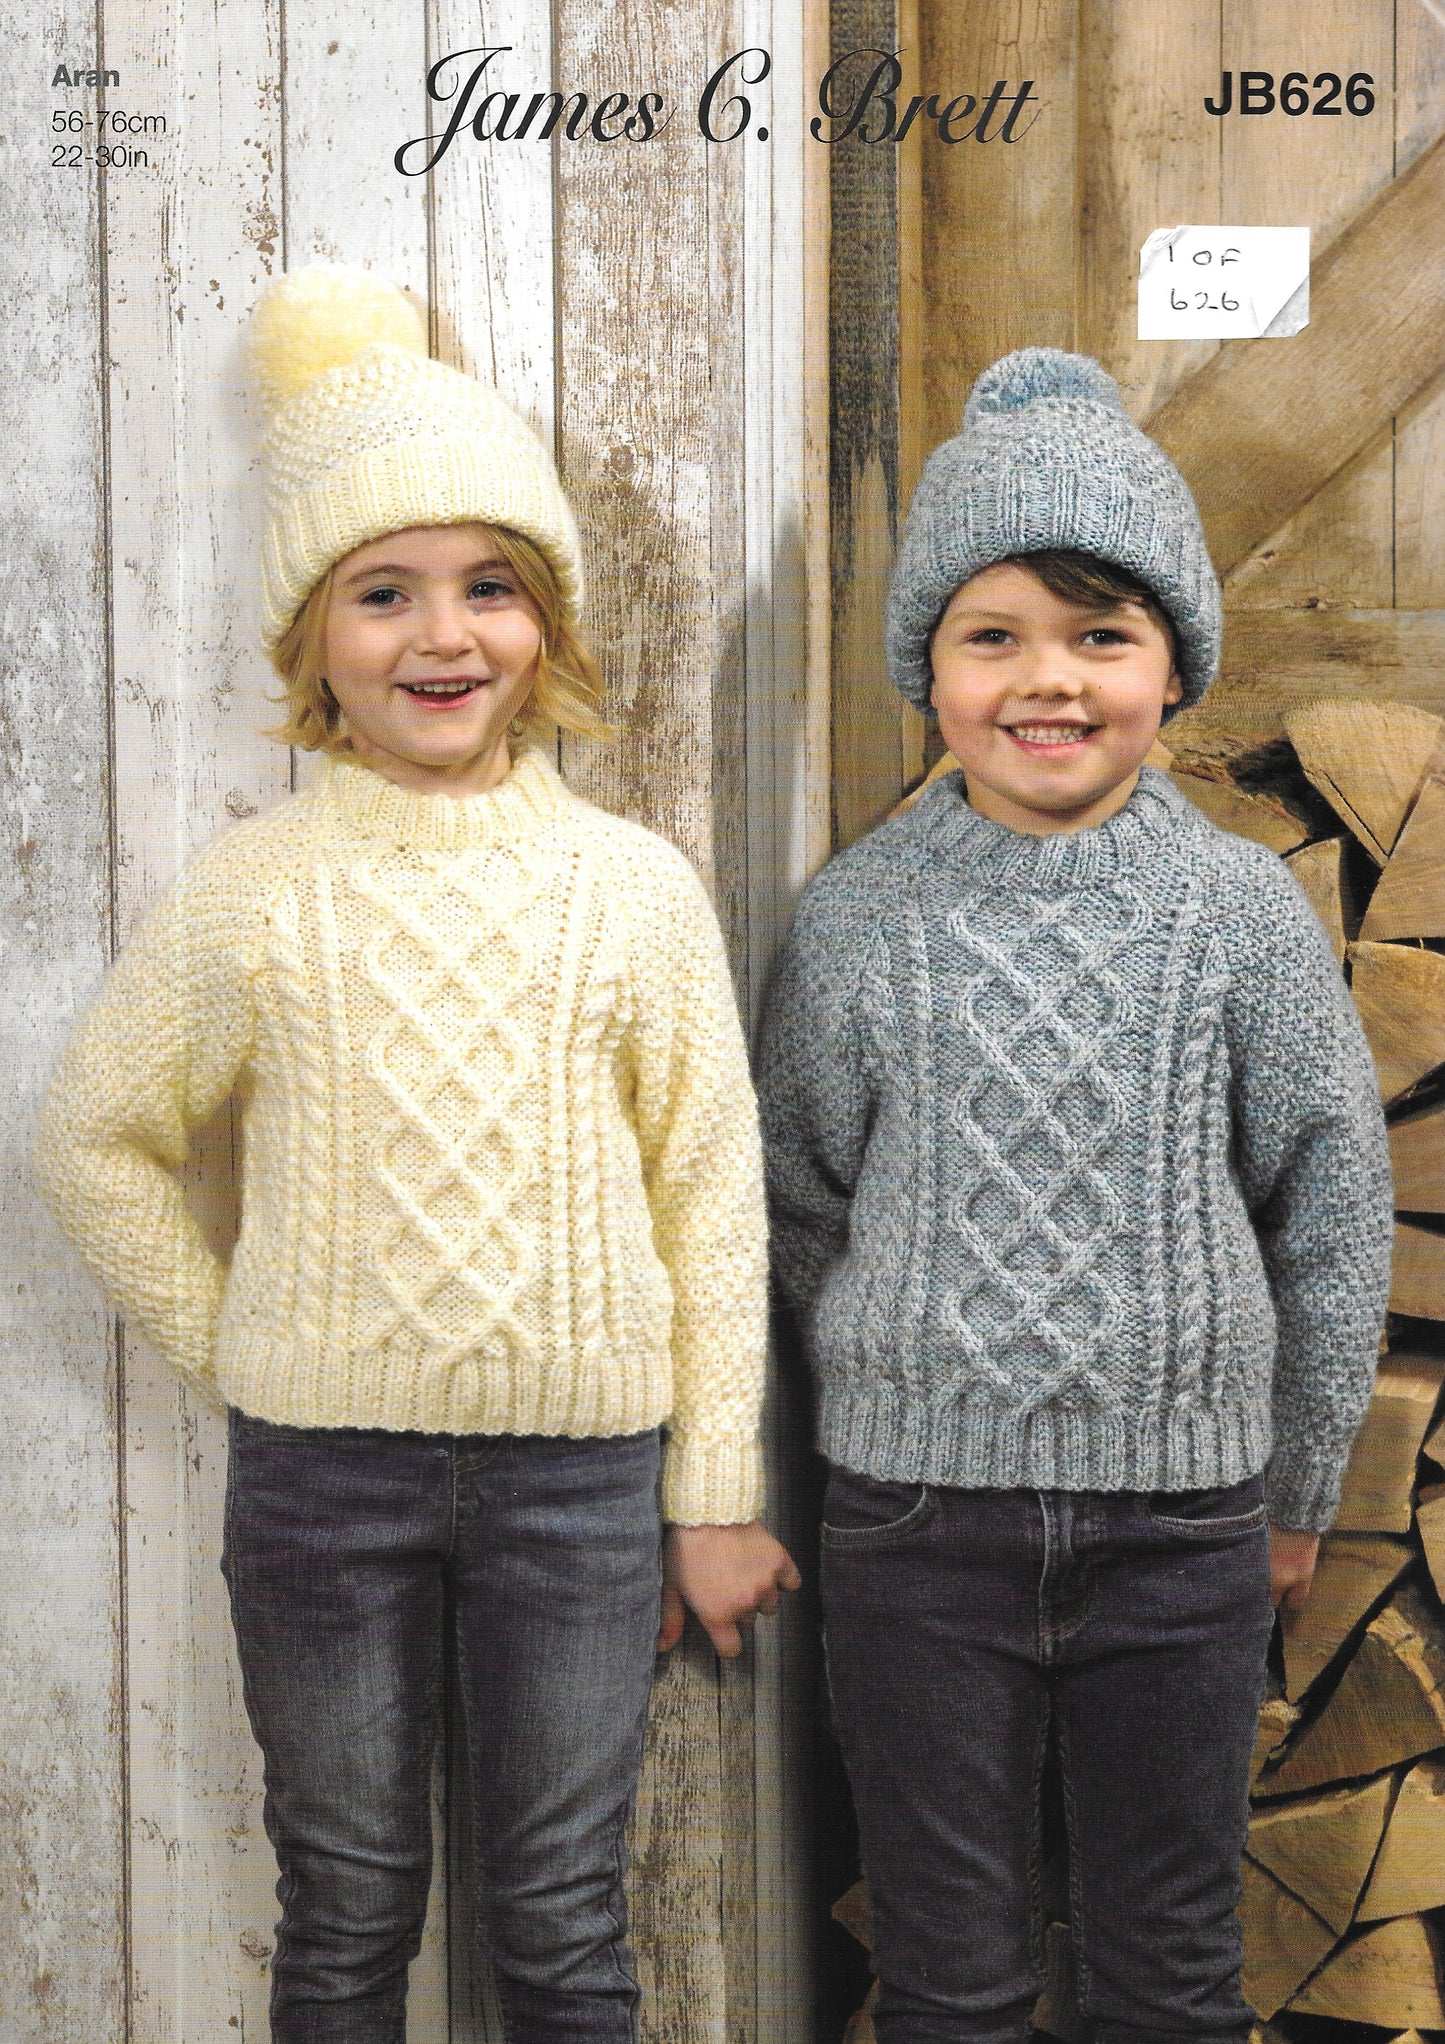 JB626 James Brett knitting pattern. Child's sweaters and hat.  Aran